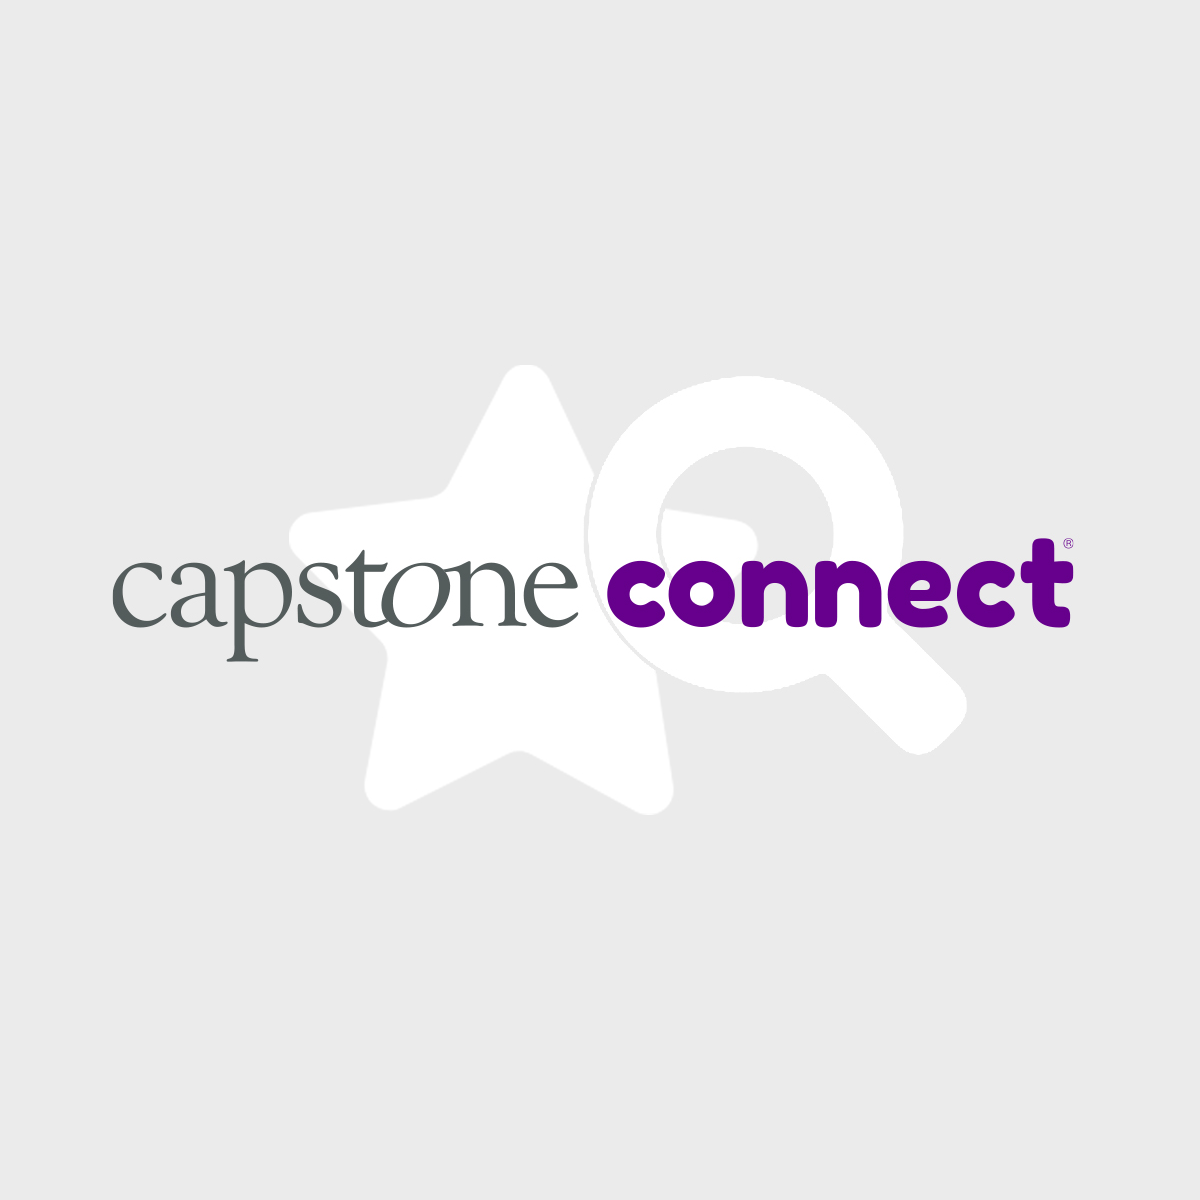 Capstone Connect